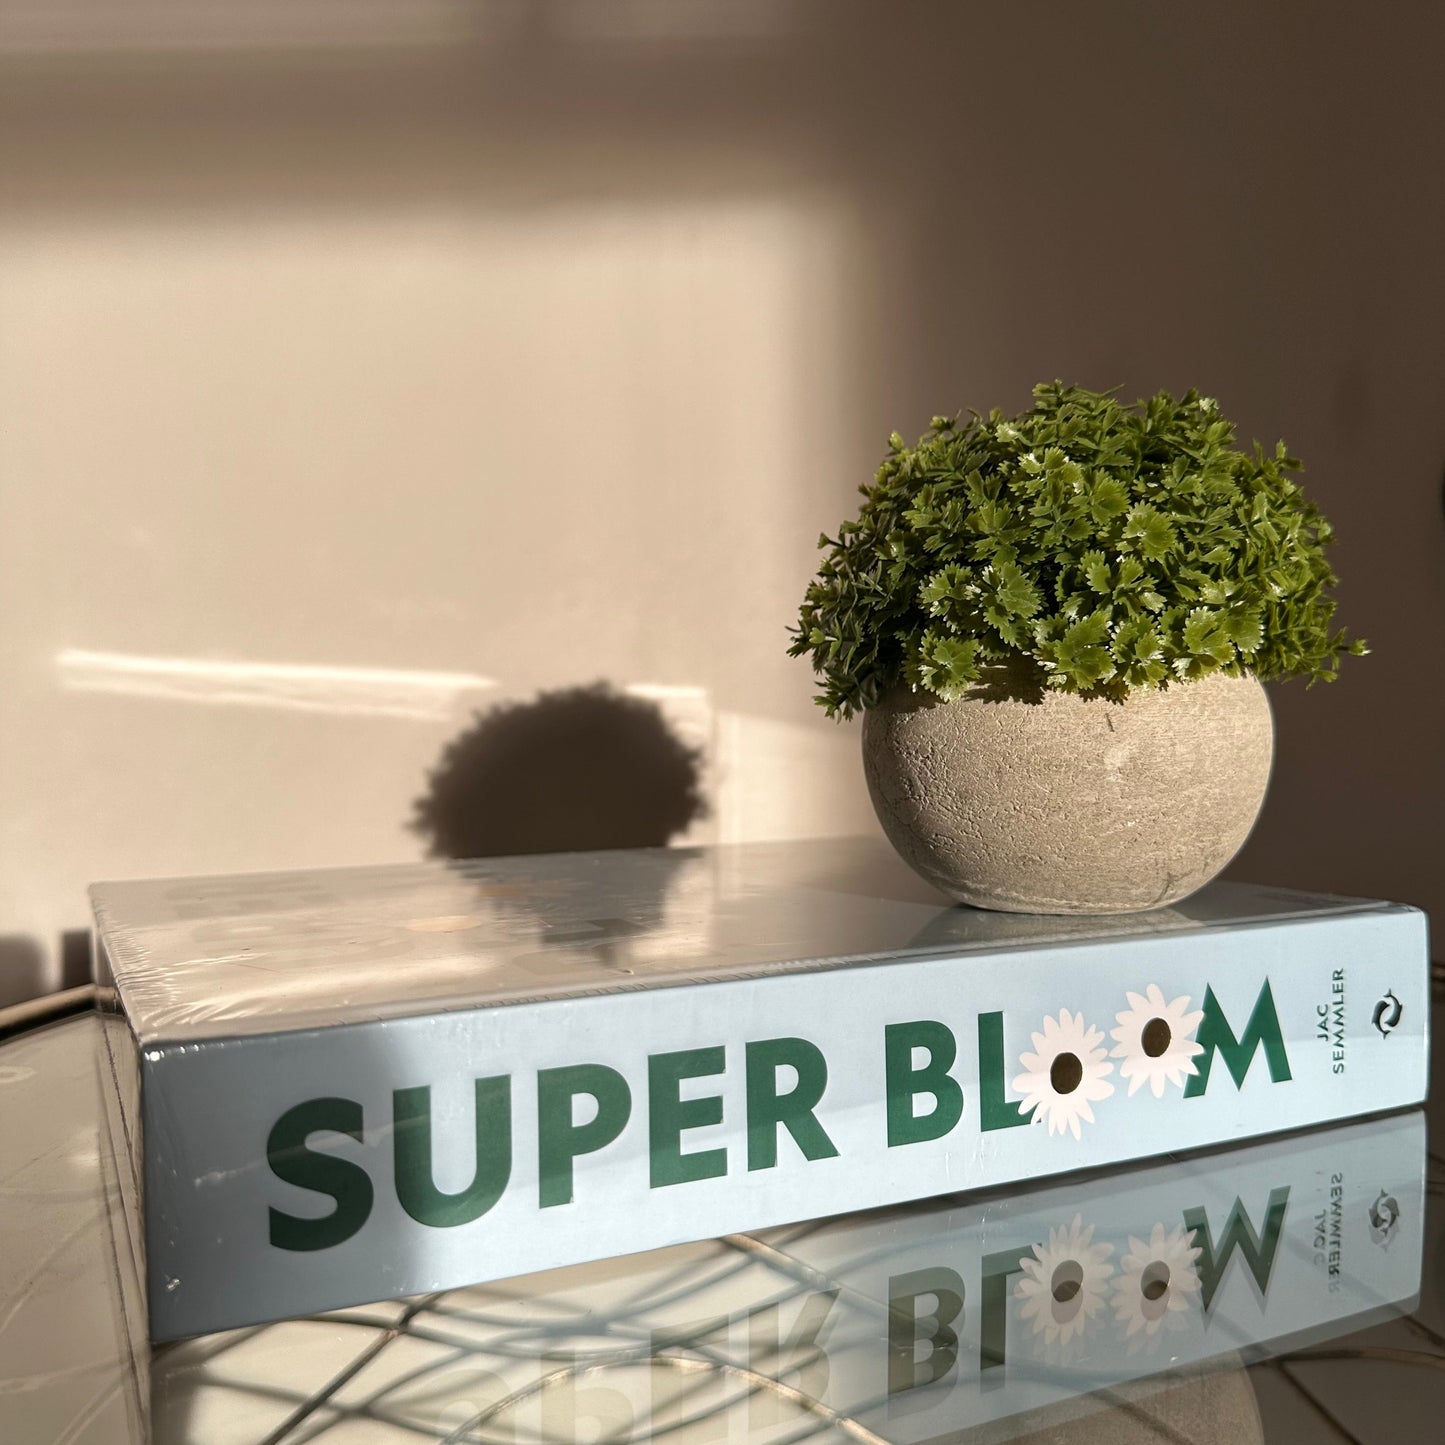 Super Bloom Book